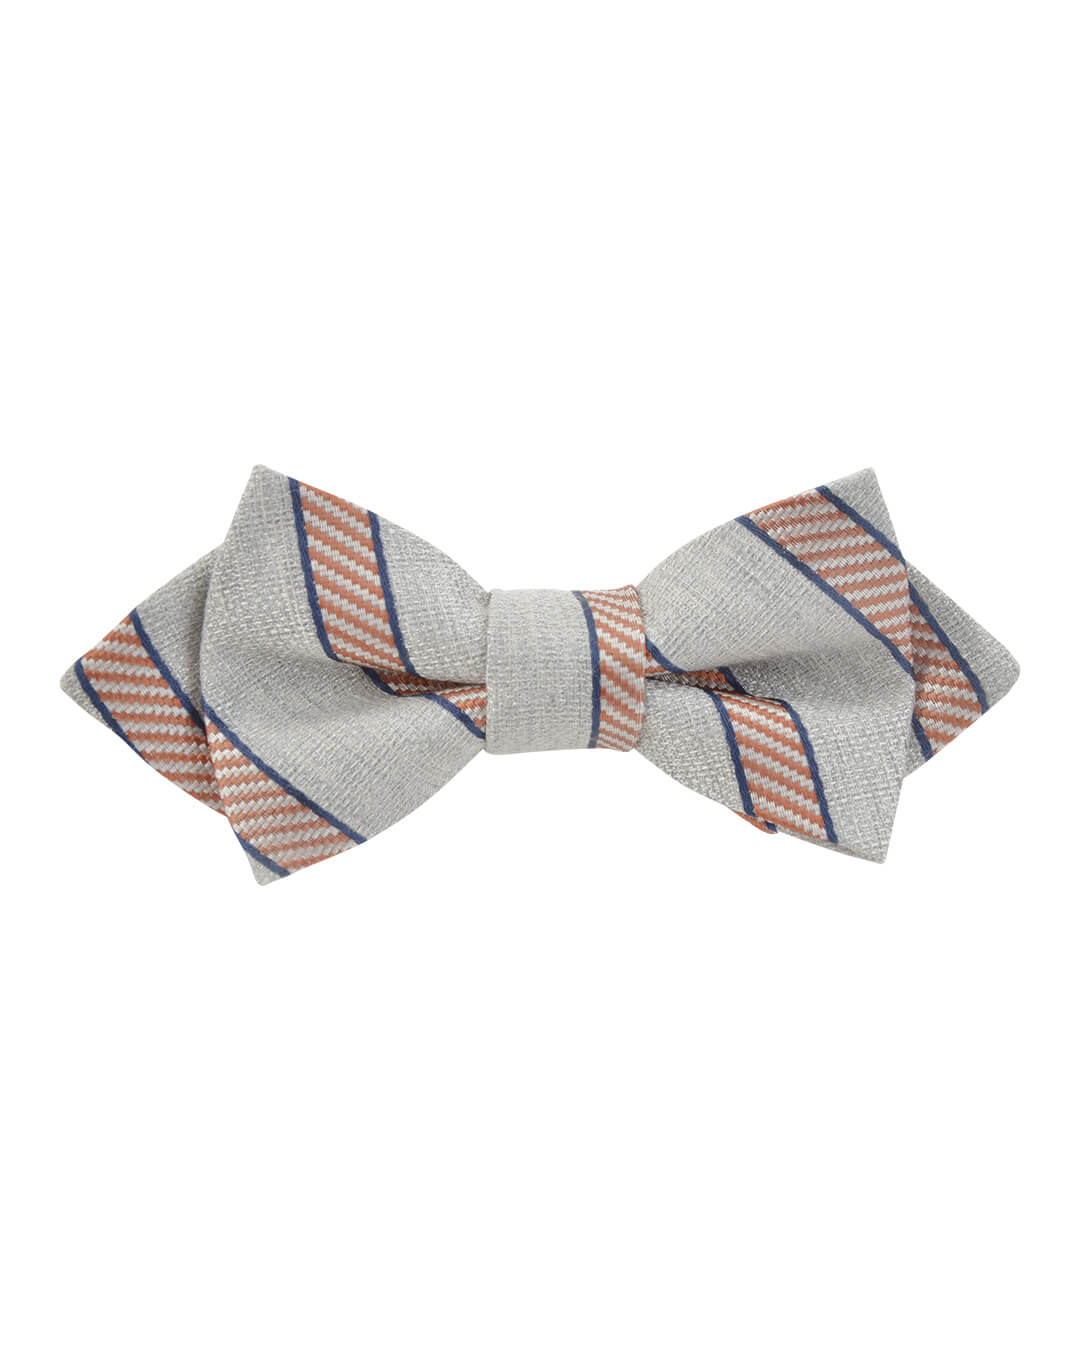 Gagliardi Bow Ties Gagliardi Silver Grey With Orange And Navy Striped Bow Tie